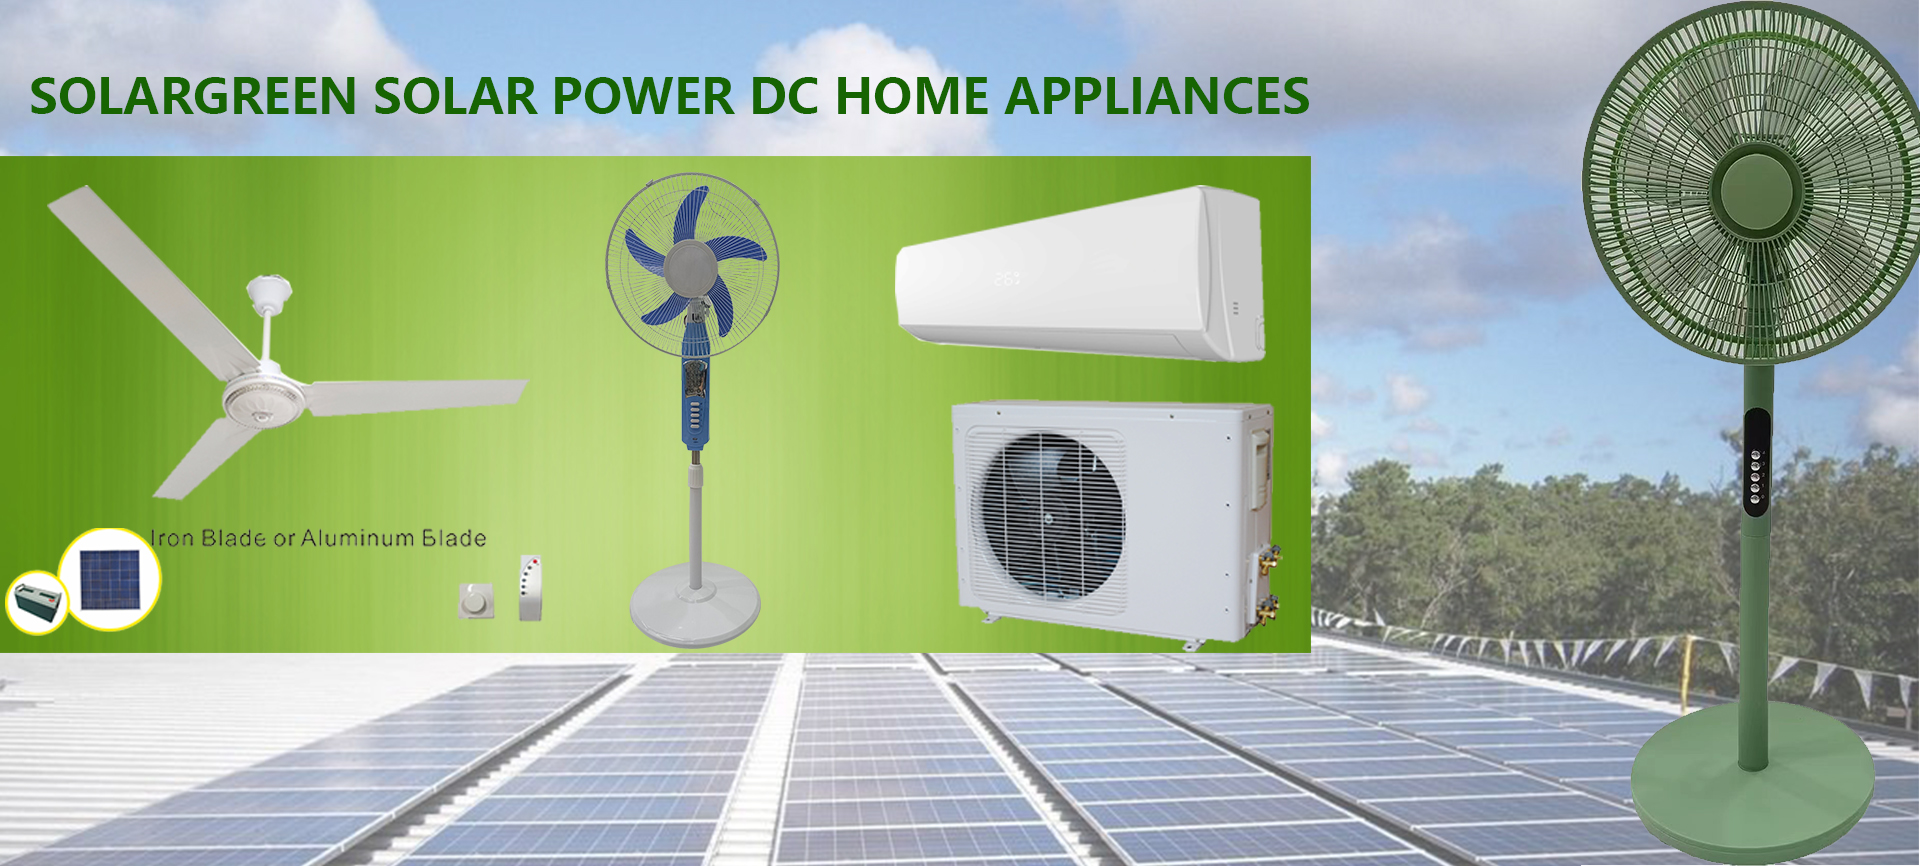 Solar DC home appliances